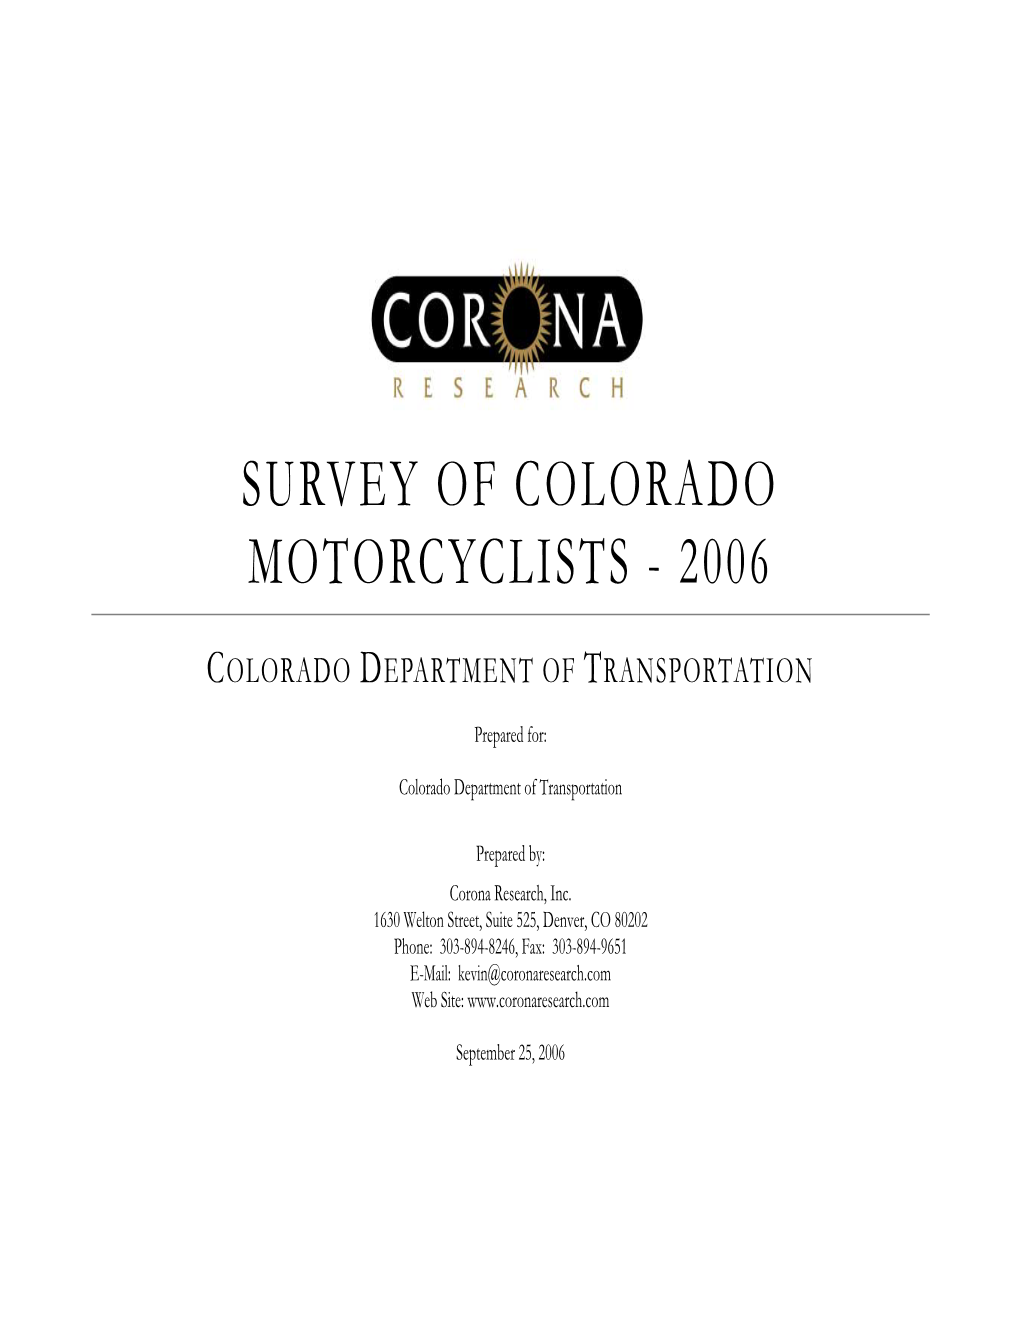 Survey of Colorado Motorcyclists - 2006